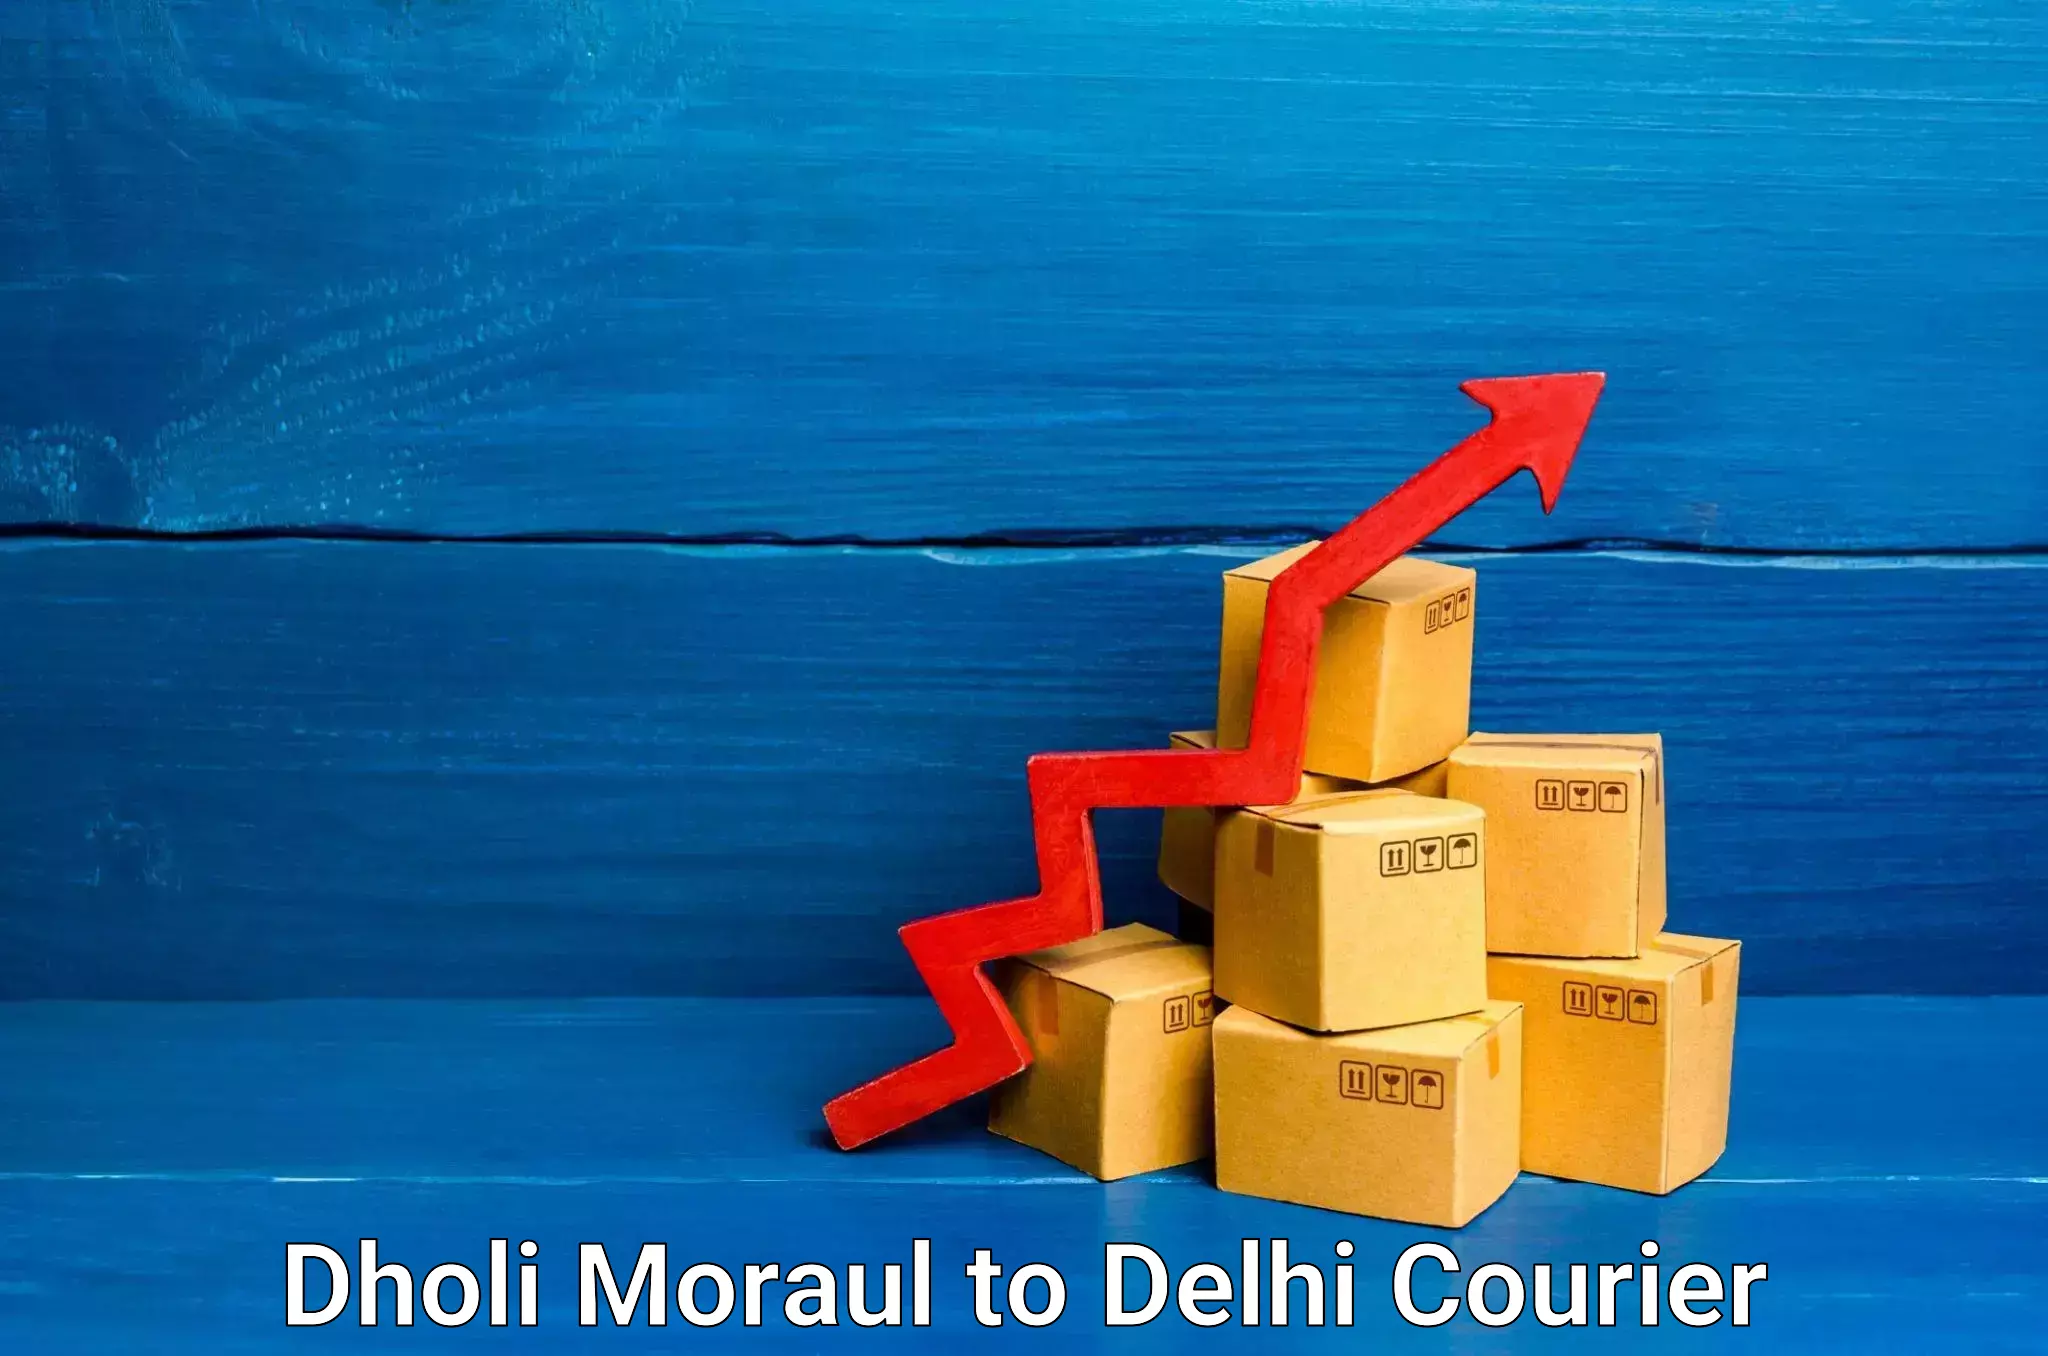 Home goods movers Dholi Moraul to NCR